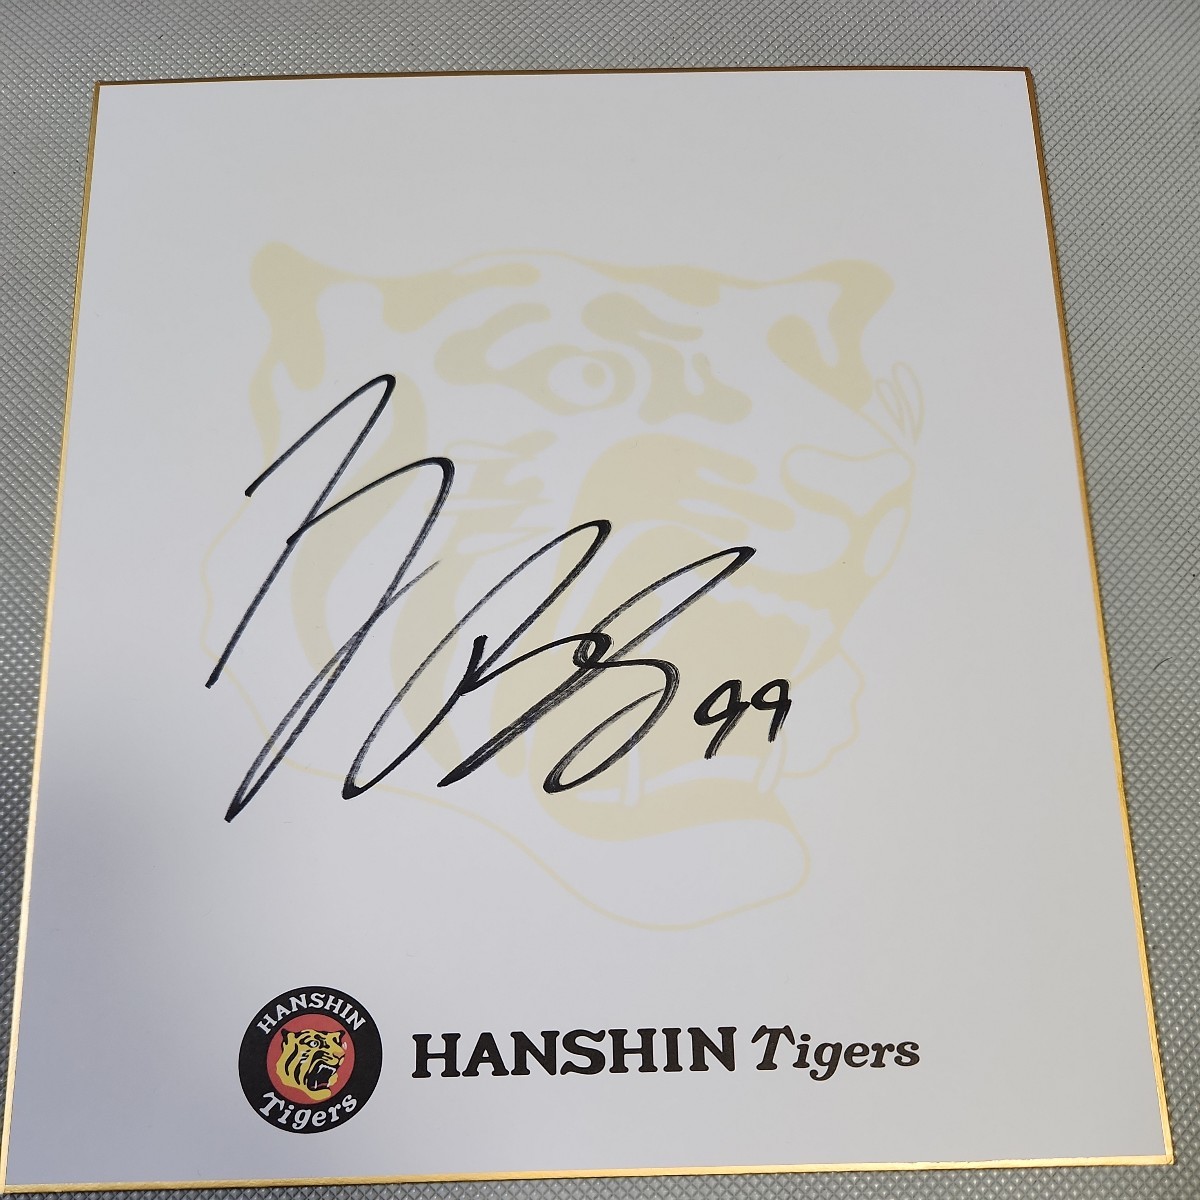 हनशिन टाइगर्स के पिचर बेस्ली के हस्ताक्षरित टीम रंगीन कागज, बेसबॉल, यादगार, संबंधित सामान, संकेत